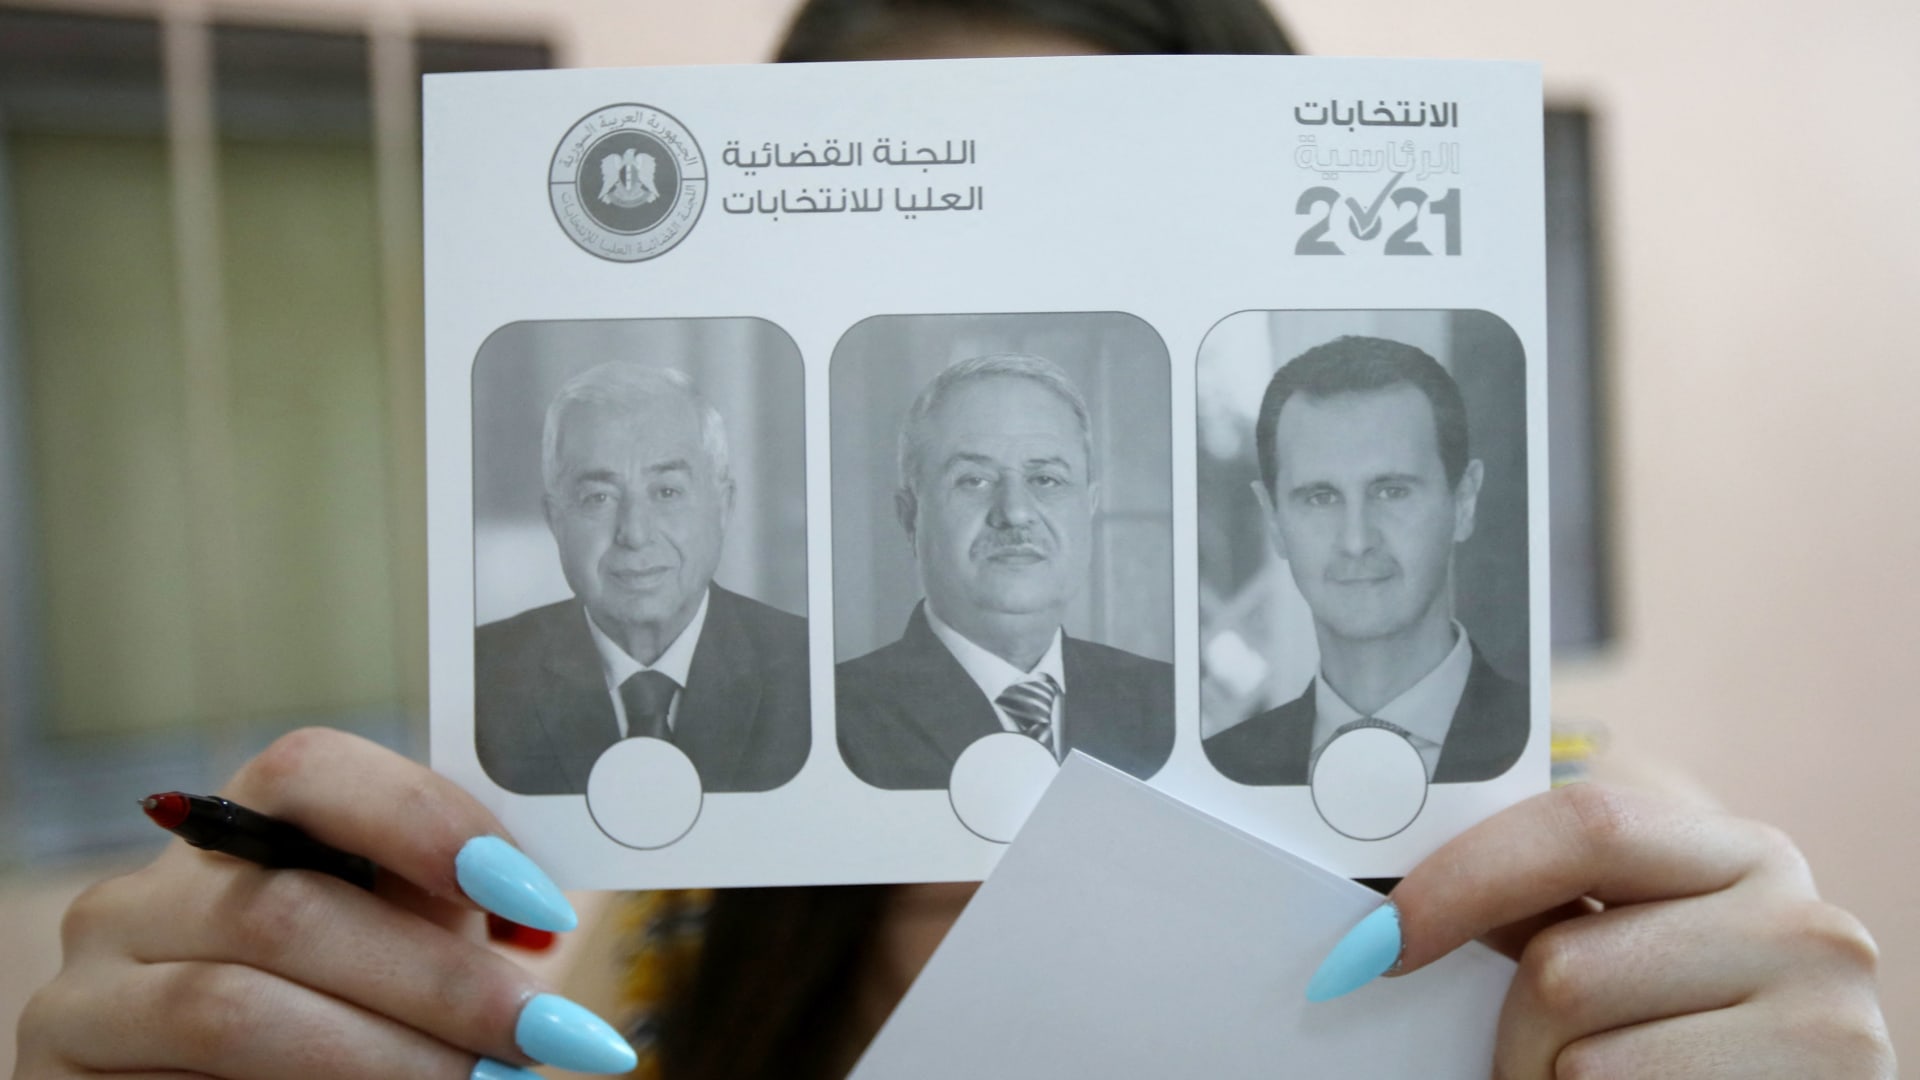 المرشحين بالانتخابات السورية 